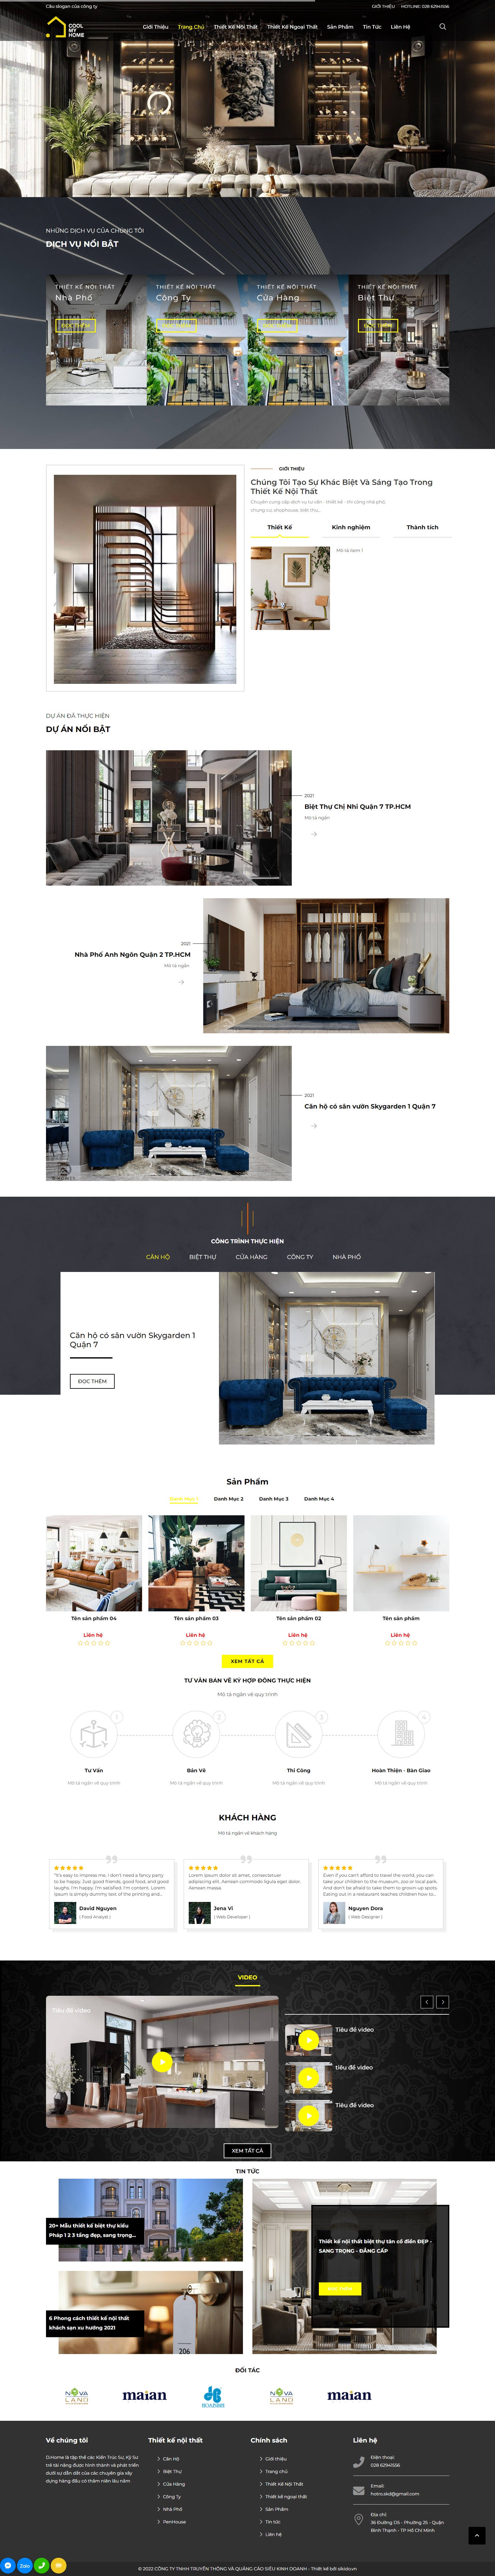 Thiết kế website kinh doanh nội thất 